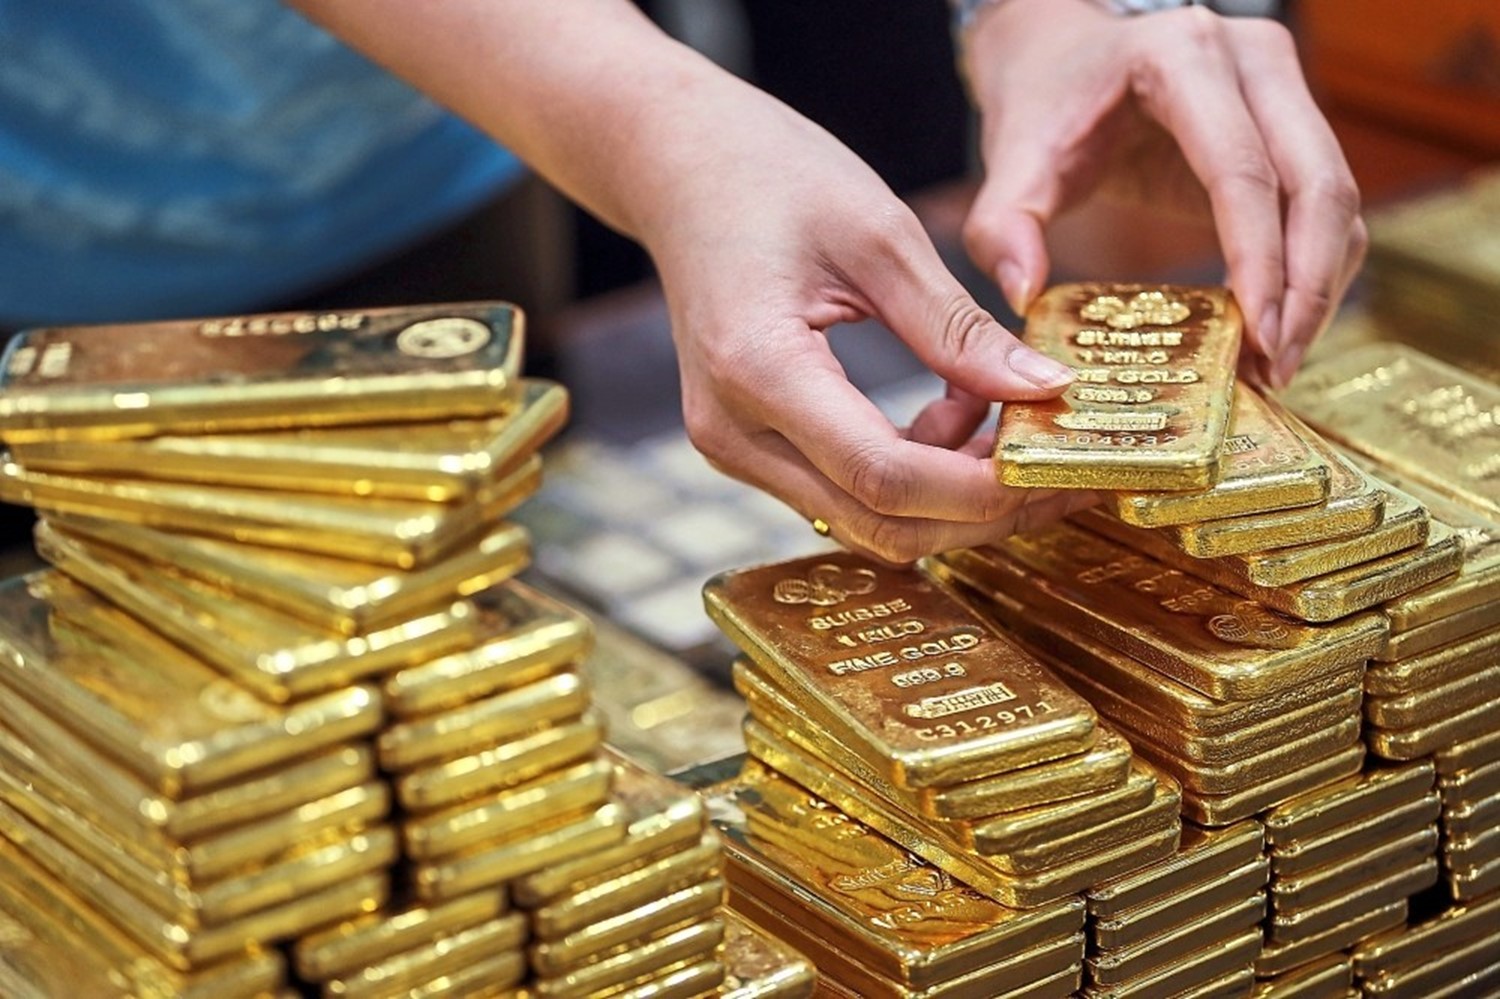 "يونيو الخير 2020" كشف جديد للذهب في مصر باحتياطي يزيد عن مليون أوقية ووزارة البترول تكشف بالتفاصيل 6